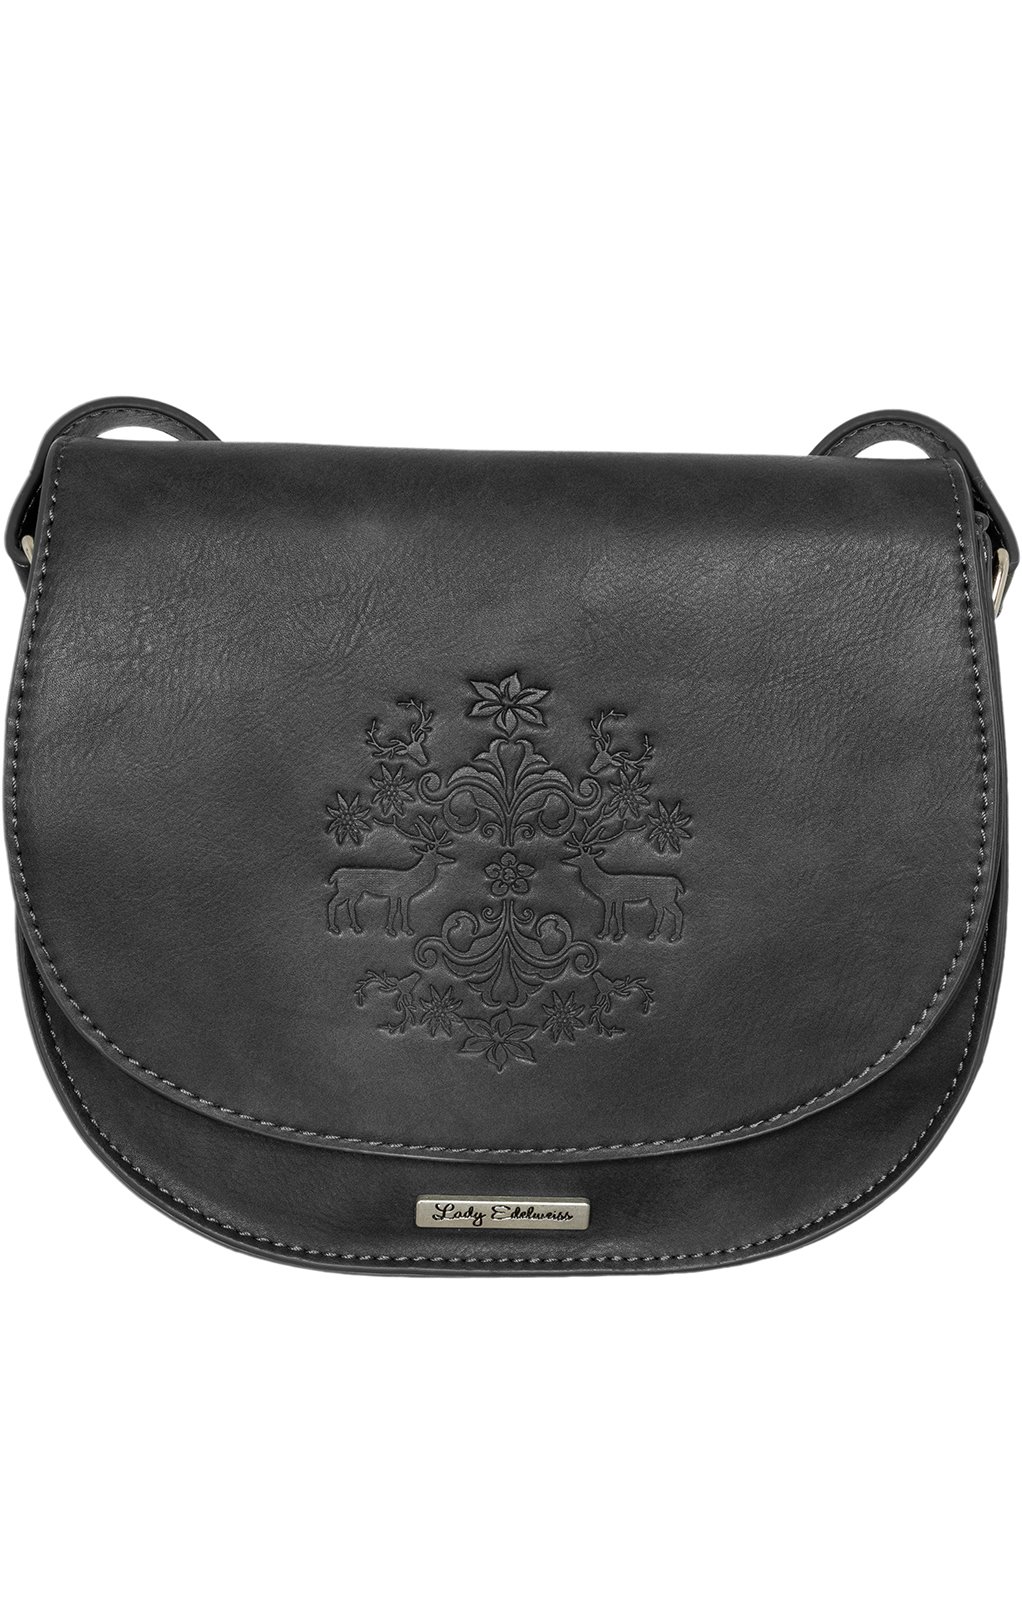 Traditionele tas 13102 zwart von Lady Edelweiss